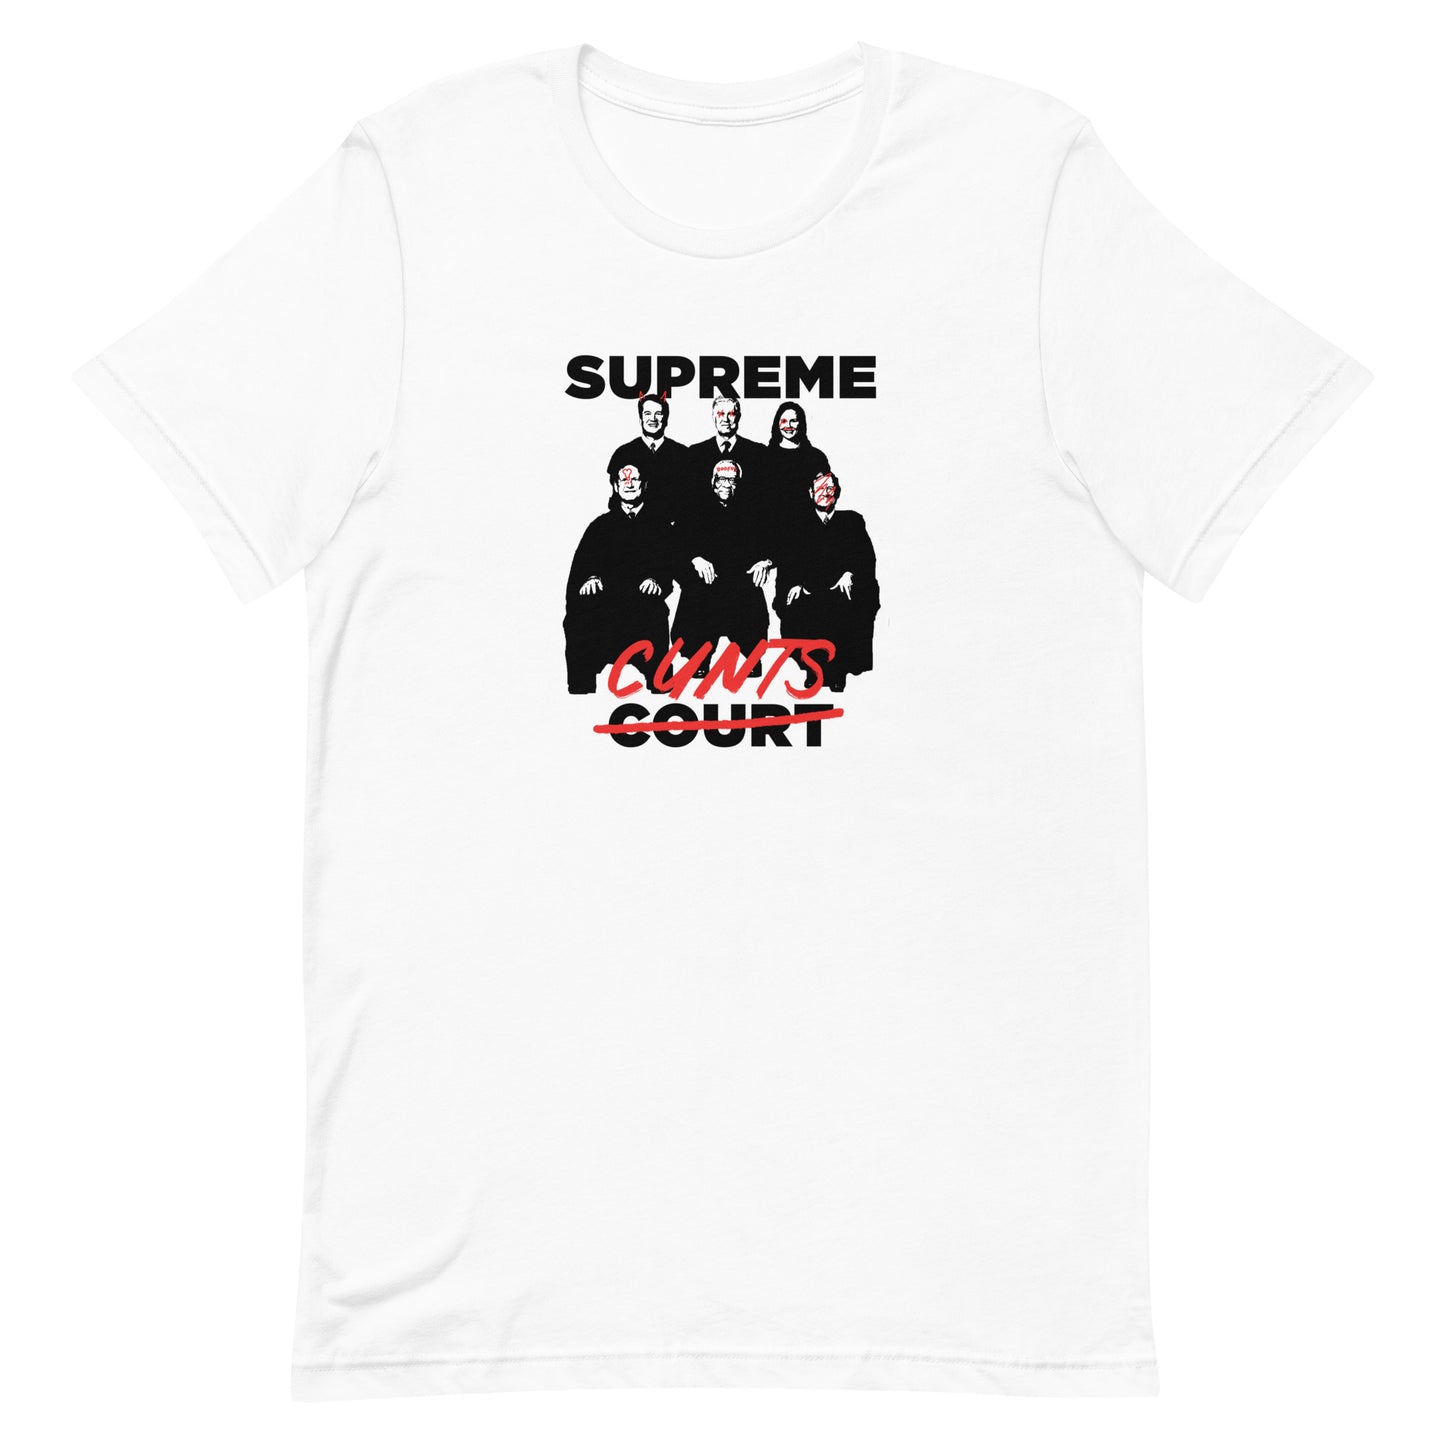 Supreme Cunts Unisex t-shirt